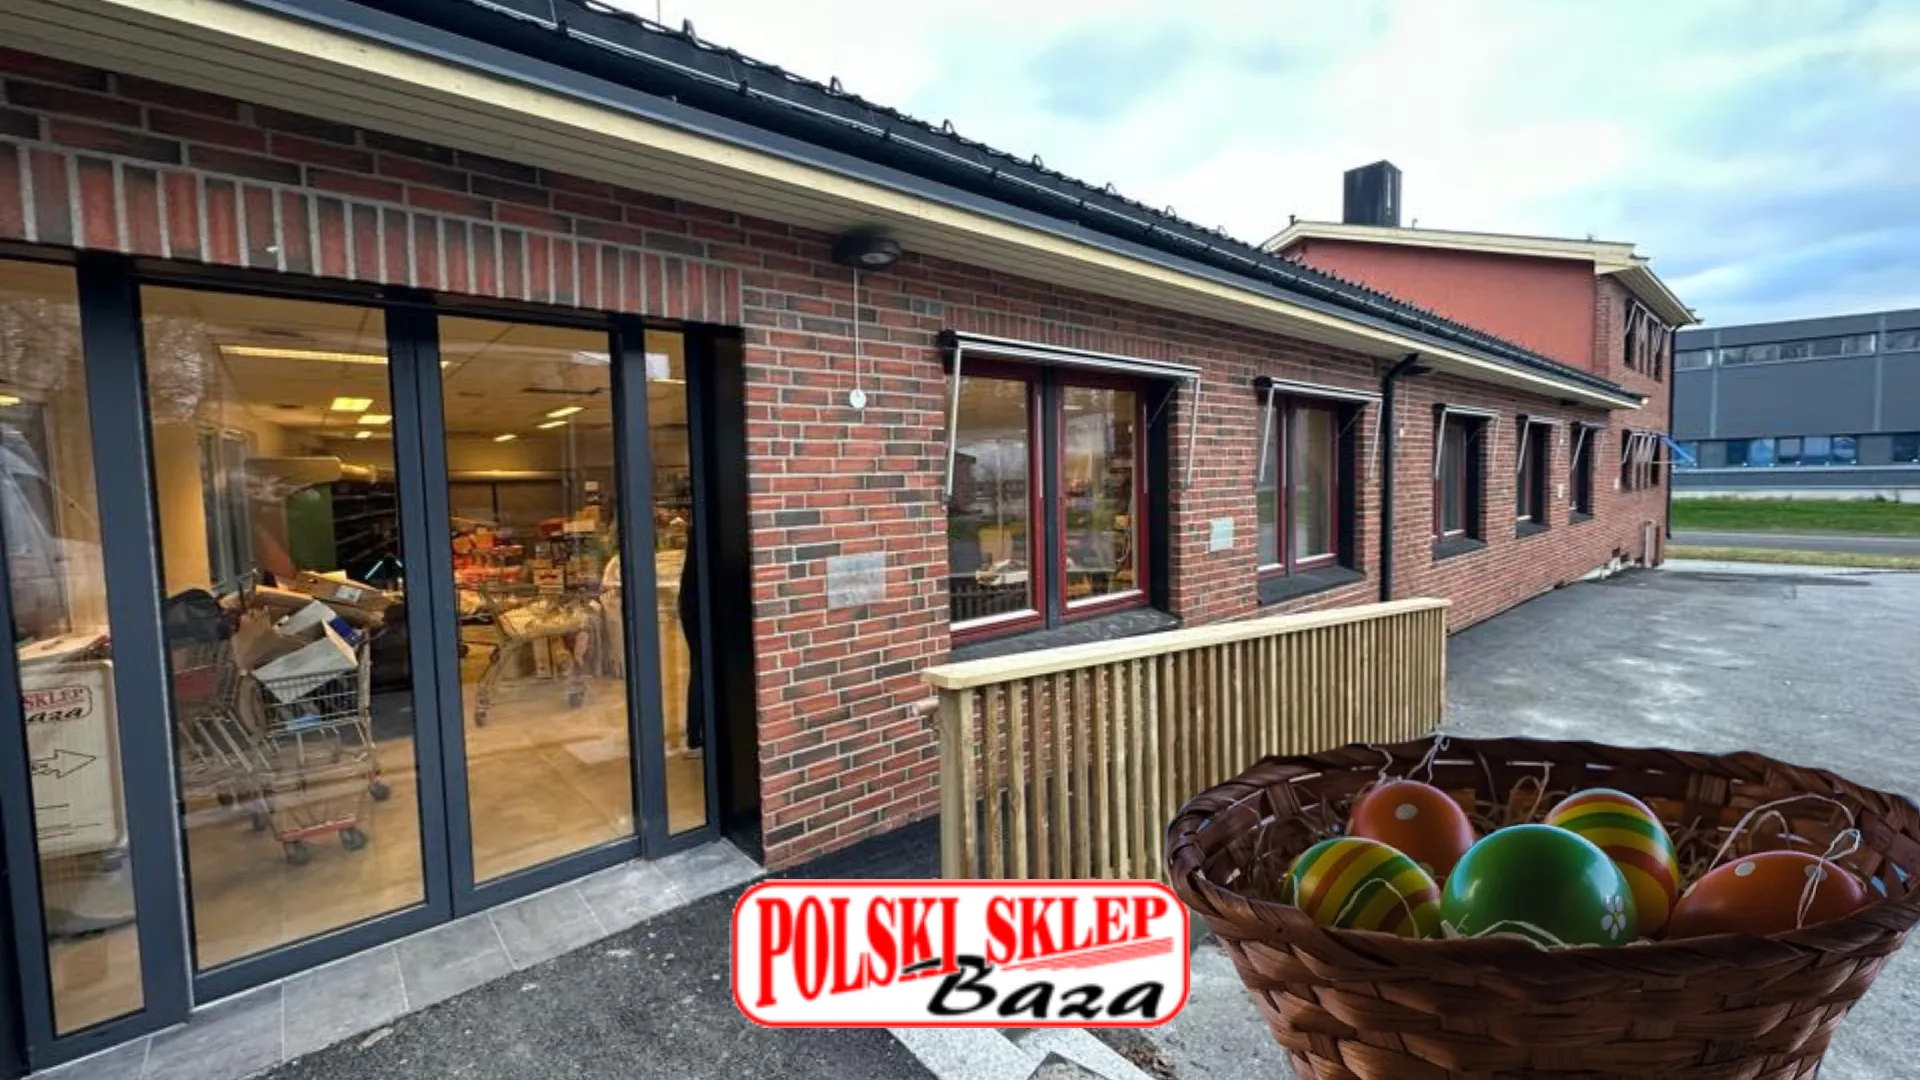 Норвегія - як працюють магазини у святкові дні? Польський магазин Baza-Пропозиція бакалійних товарів в Осло і Драммен